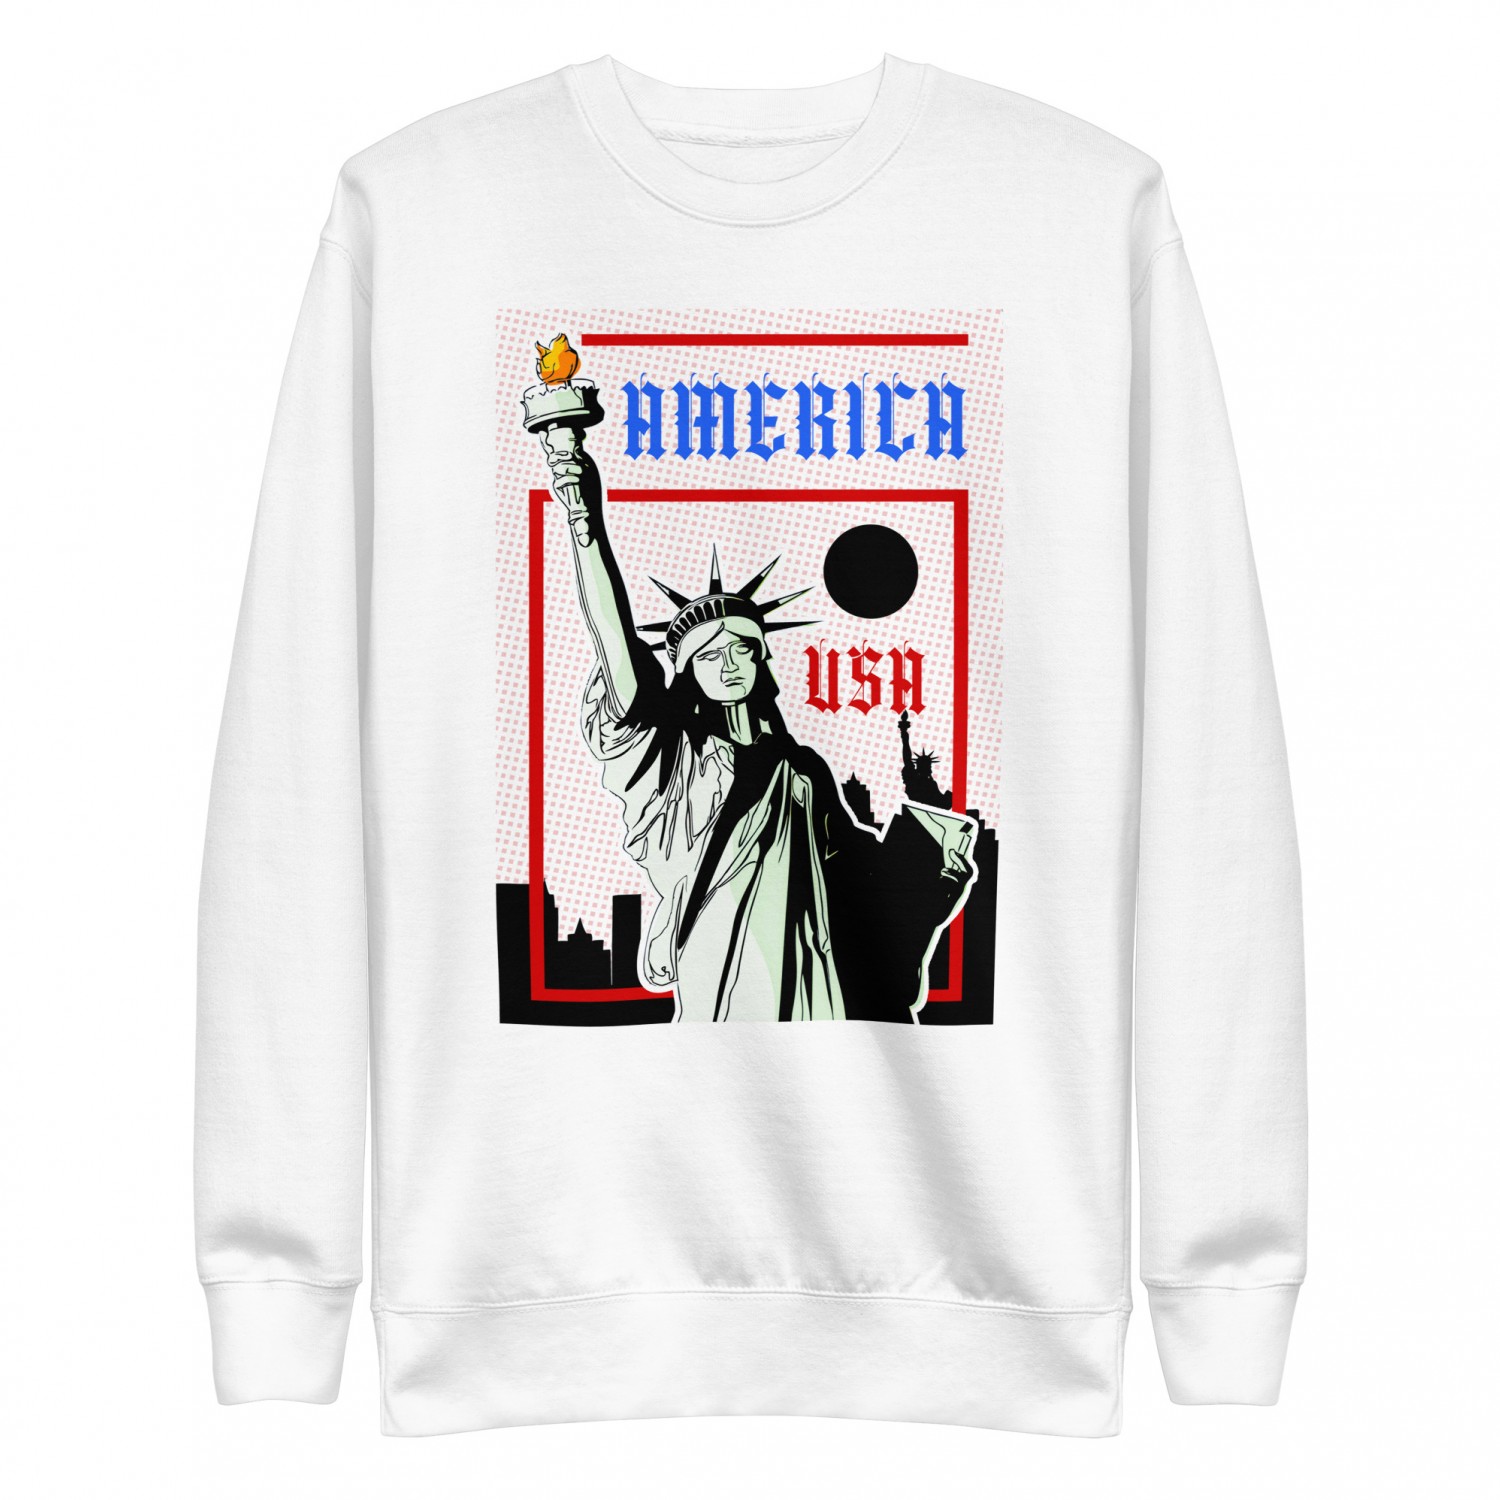 Buy America sweatshirt